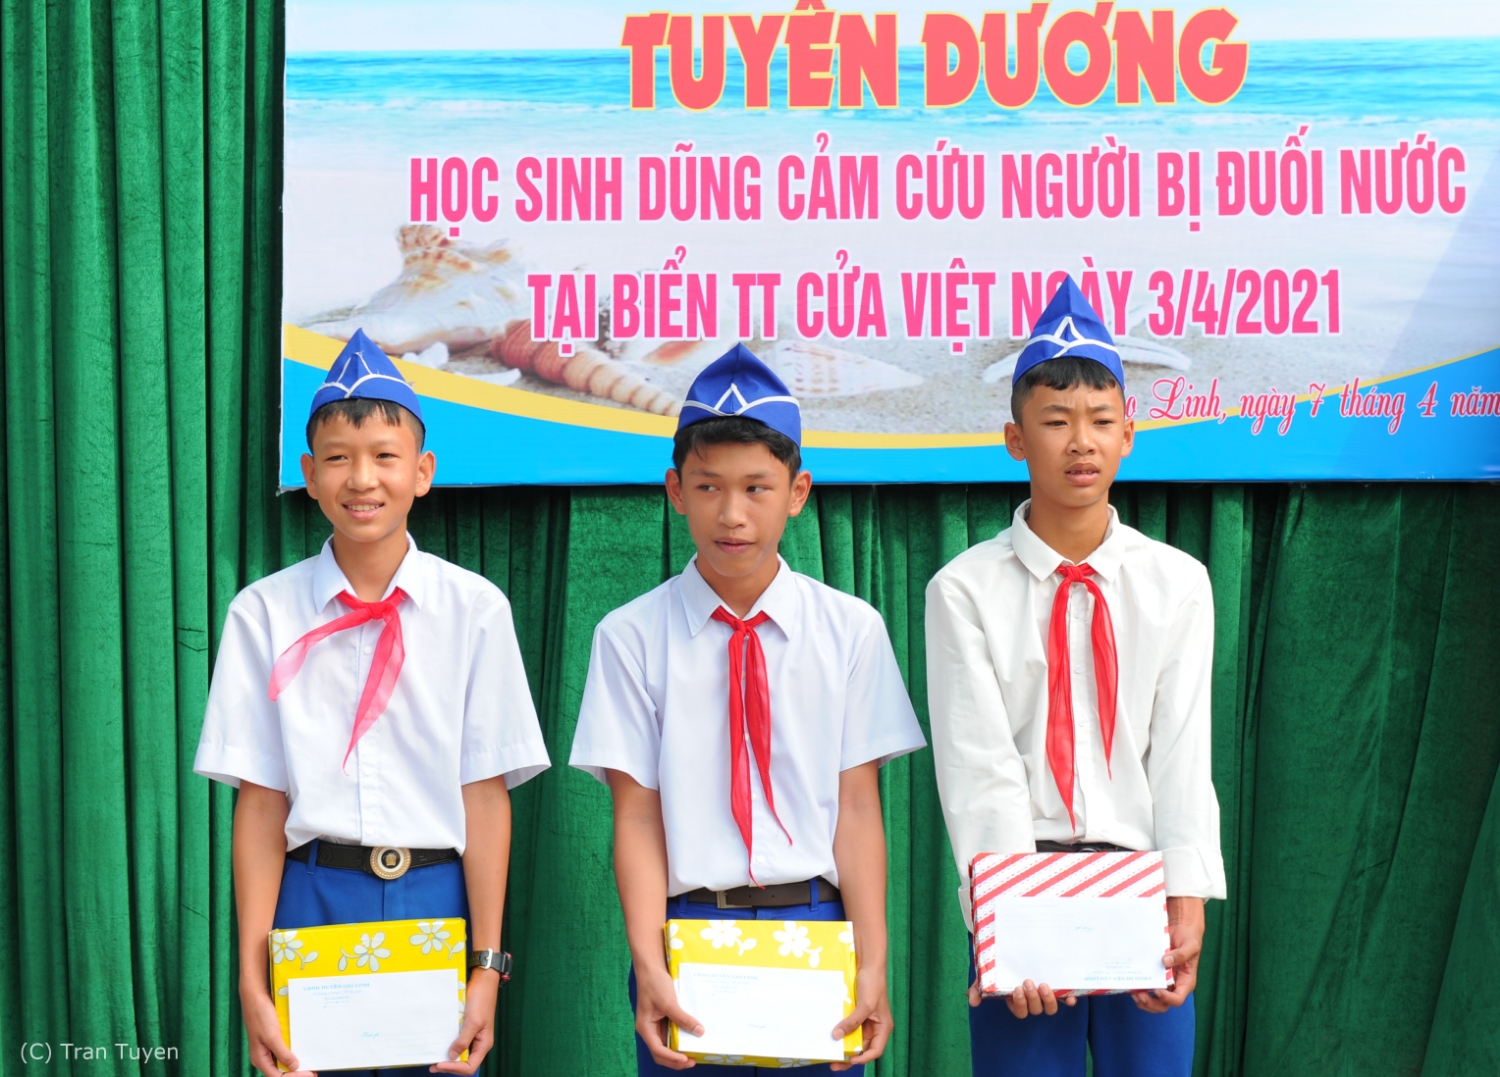 Trước đó, 3 em: Trần Viết Tôn, Nguyễn Vĩnh An, Bùi Trường Giang được UBND huyện Gio Linh tuyên dương, khen thưởng vì hành động dũng cảm cứu người - Ảnh: Trần Tuyền